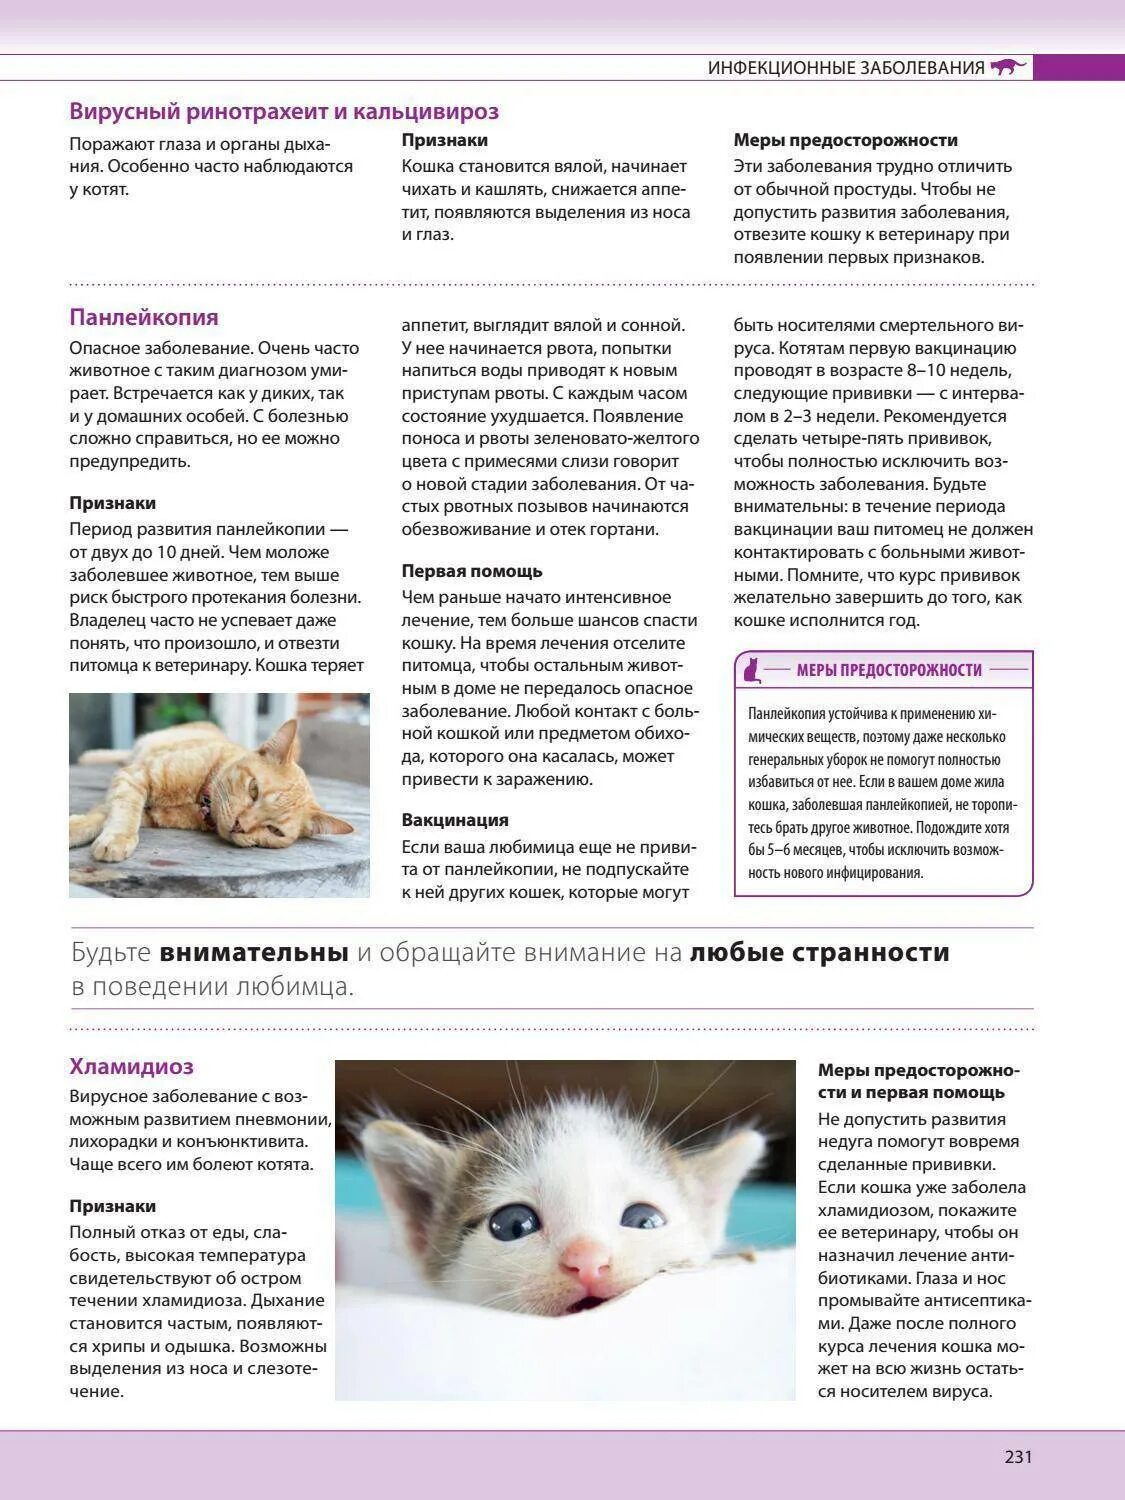 Схема лечения кальцивироза у котенка. Симптомы ринотрахеита у кошек. Болезнь ринотрахеит у котят. Ринотрахеит у кошек схема. Болезни кормящих кошек